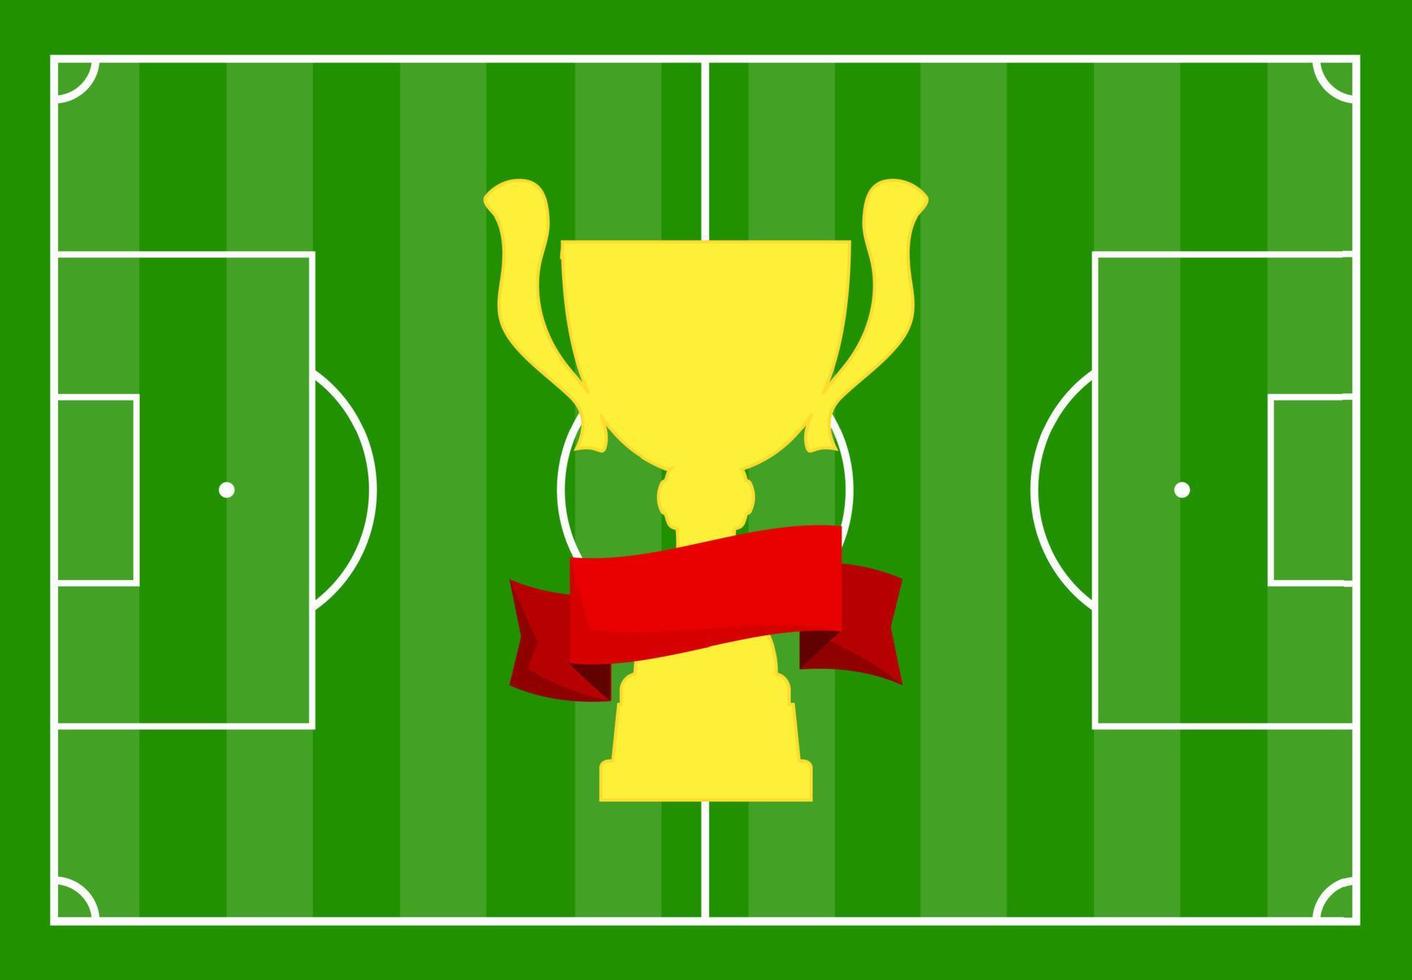 Amerikaans voetbal veld- met groen gras en met een goud kop met een rood lintje. vector illustratie